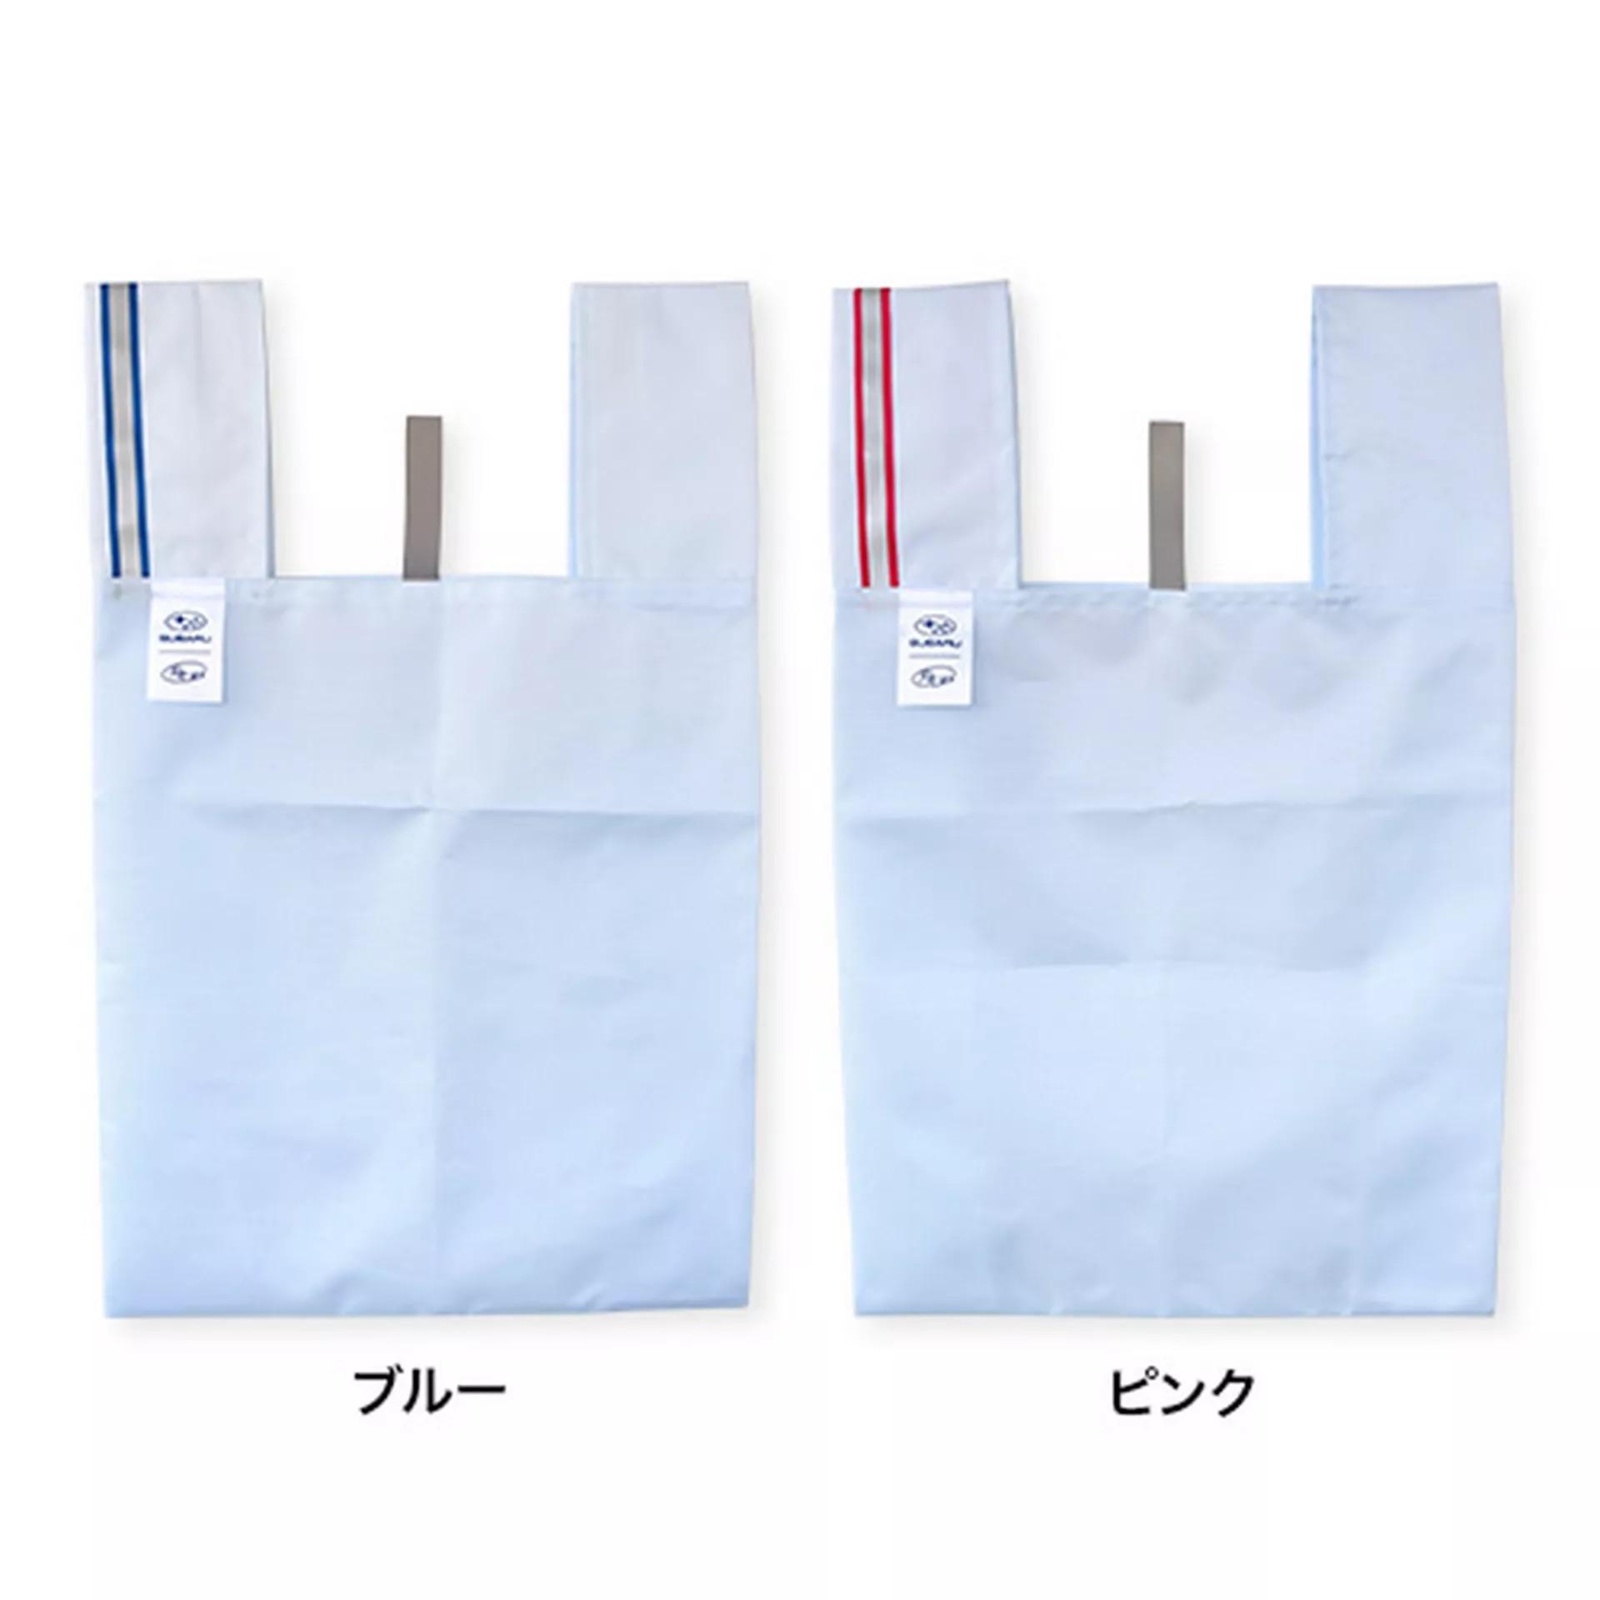 lhqodcwn_6450f0e5a2e63_subaru-bag-airbag-fabric-1.jpeg